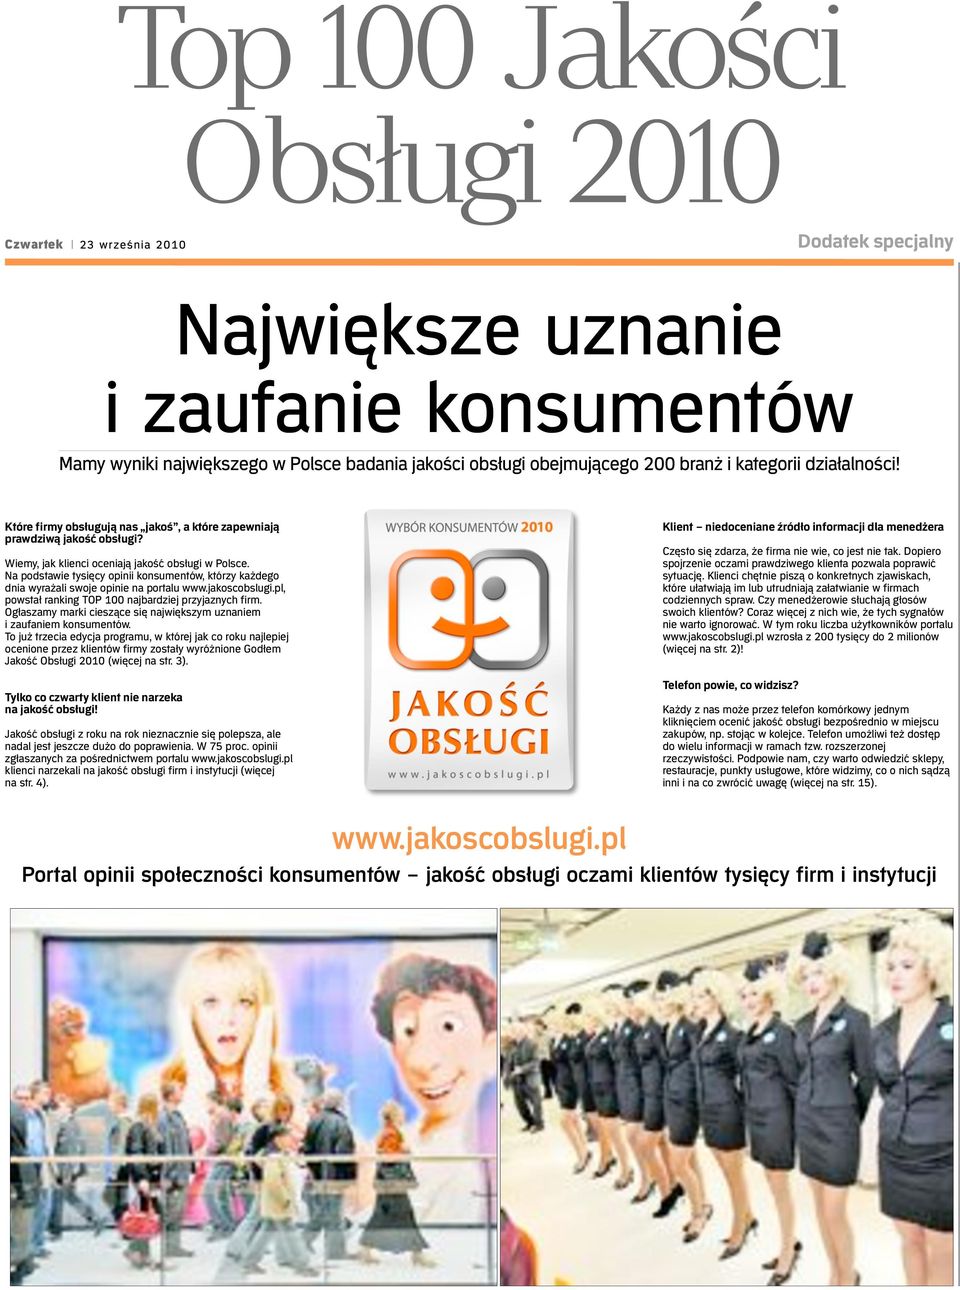 Na podstawie tysięcy opinii konsumentów, którzy każdego dnia wyrażali swoje opinie na portalu www.jakoscobslugi.pl, powstał ranking TOP 100 najbardziej przyjaznych firm.